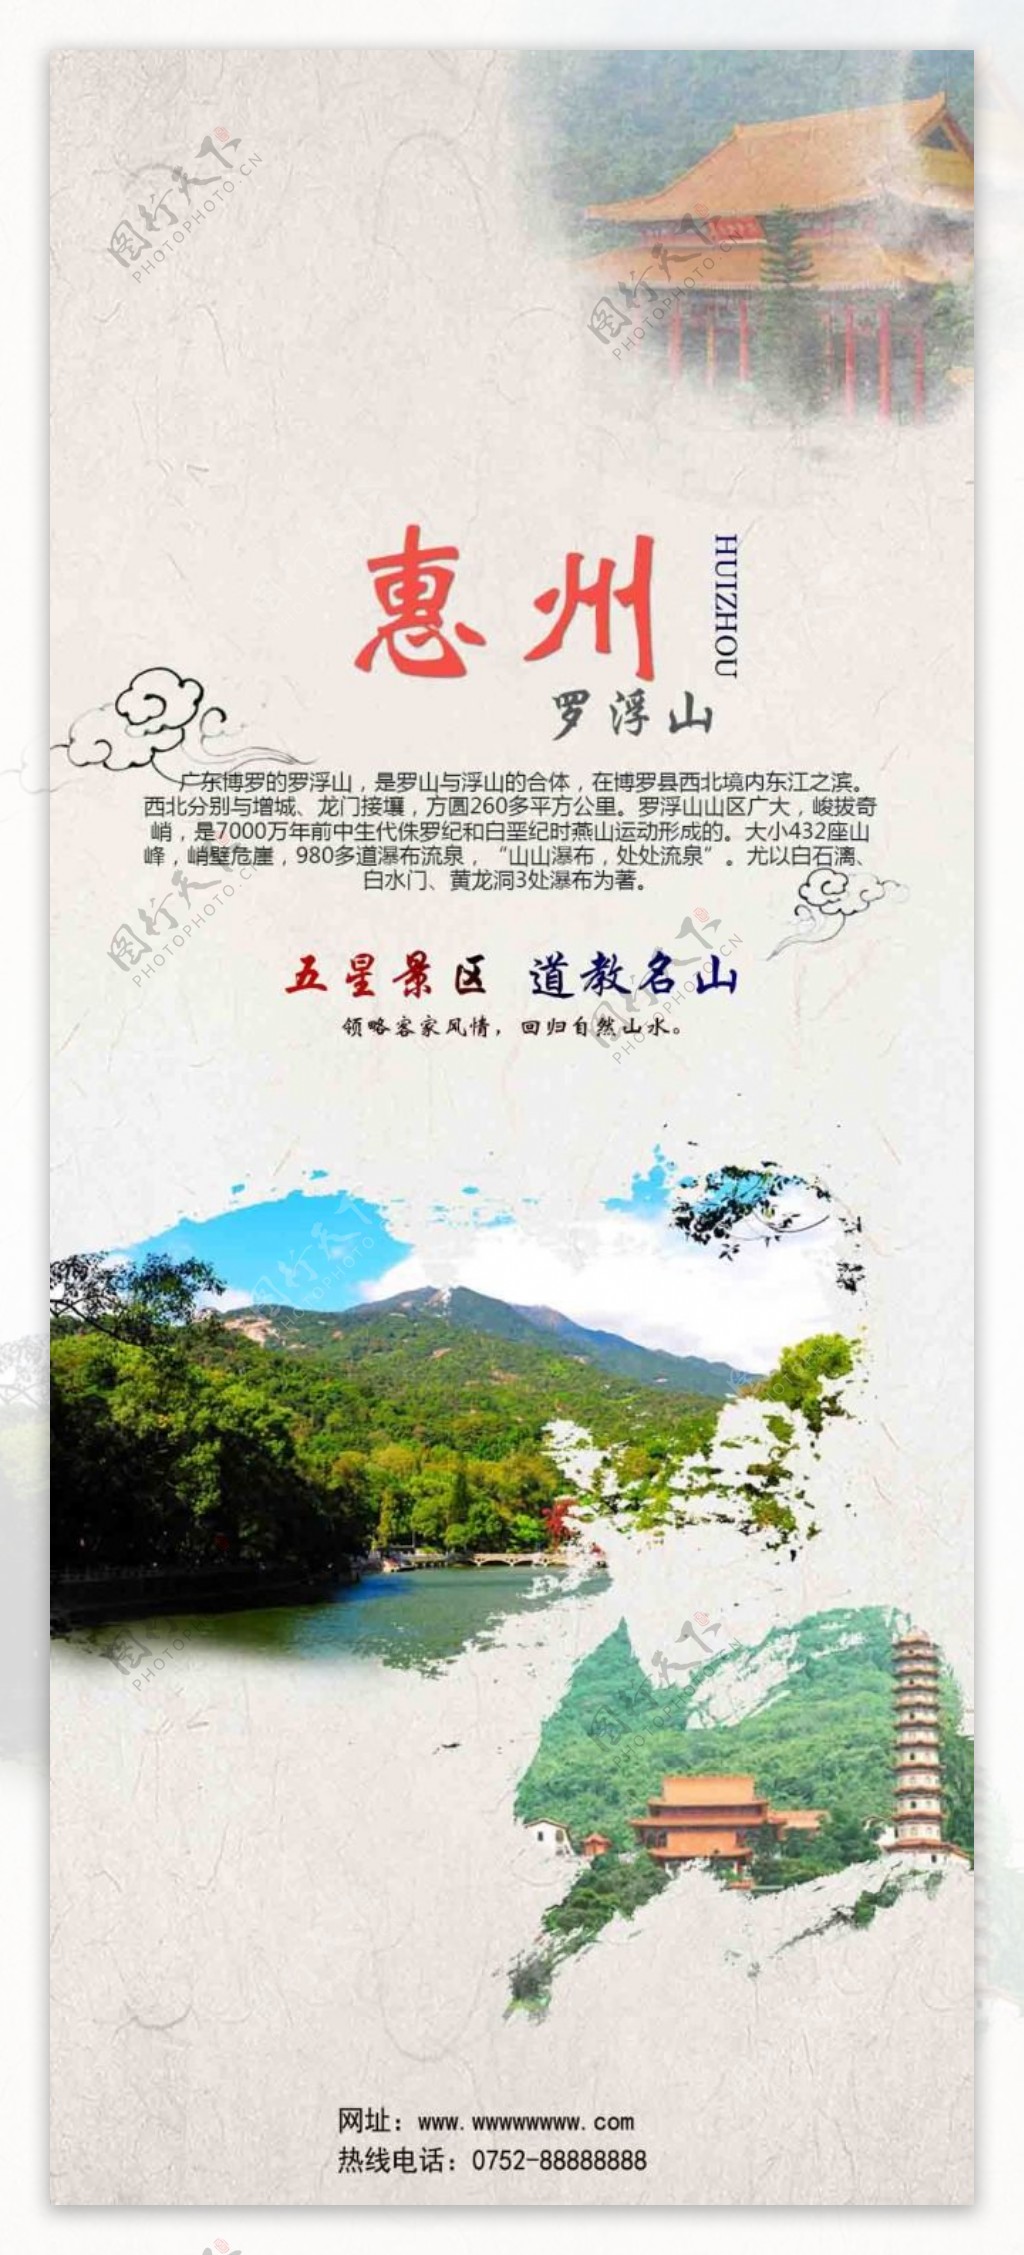 惠州罗浮山旅游折页画册封面折页旅游策宣传单页海报